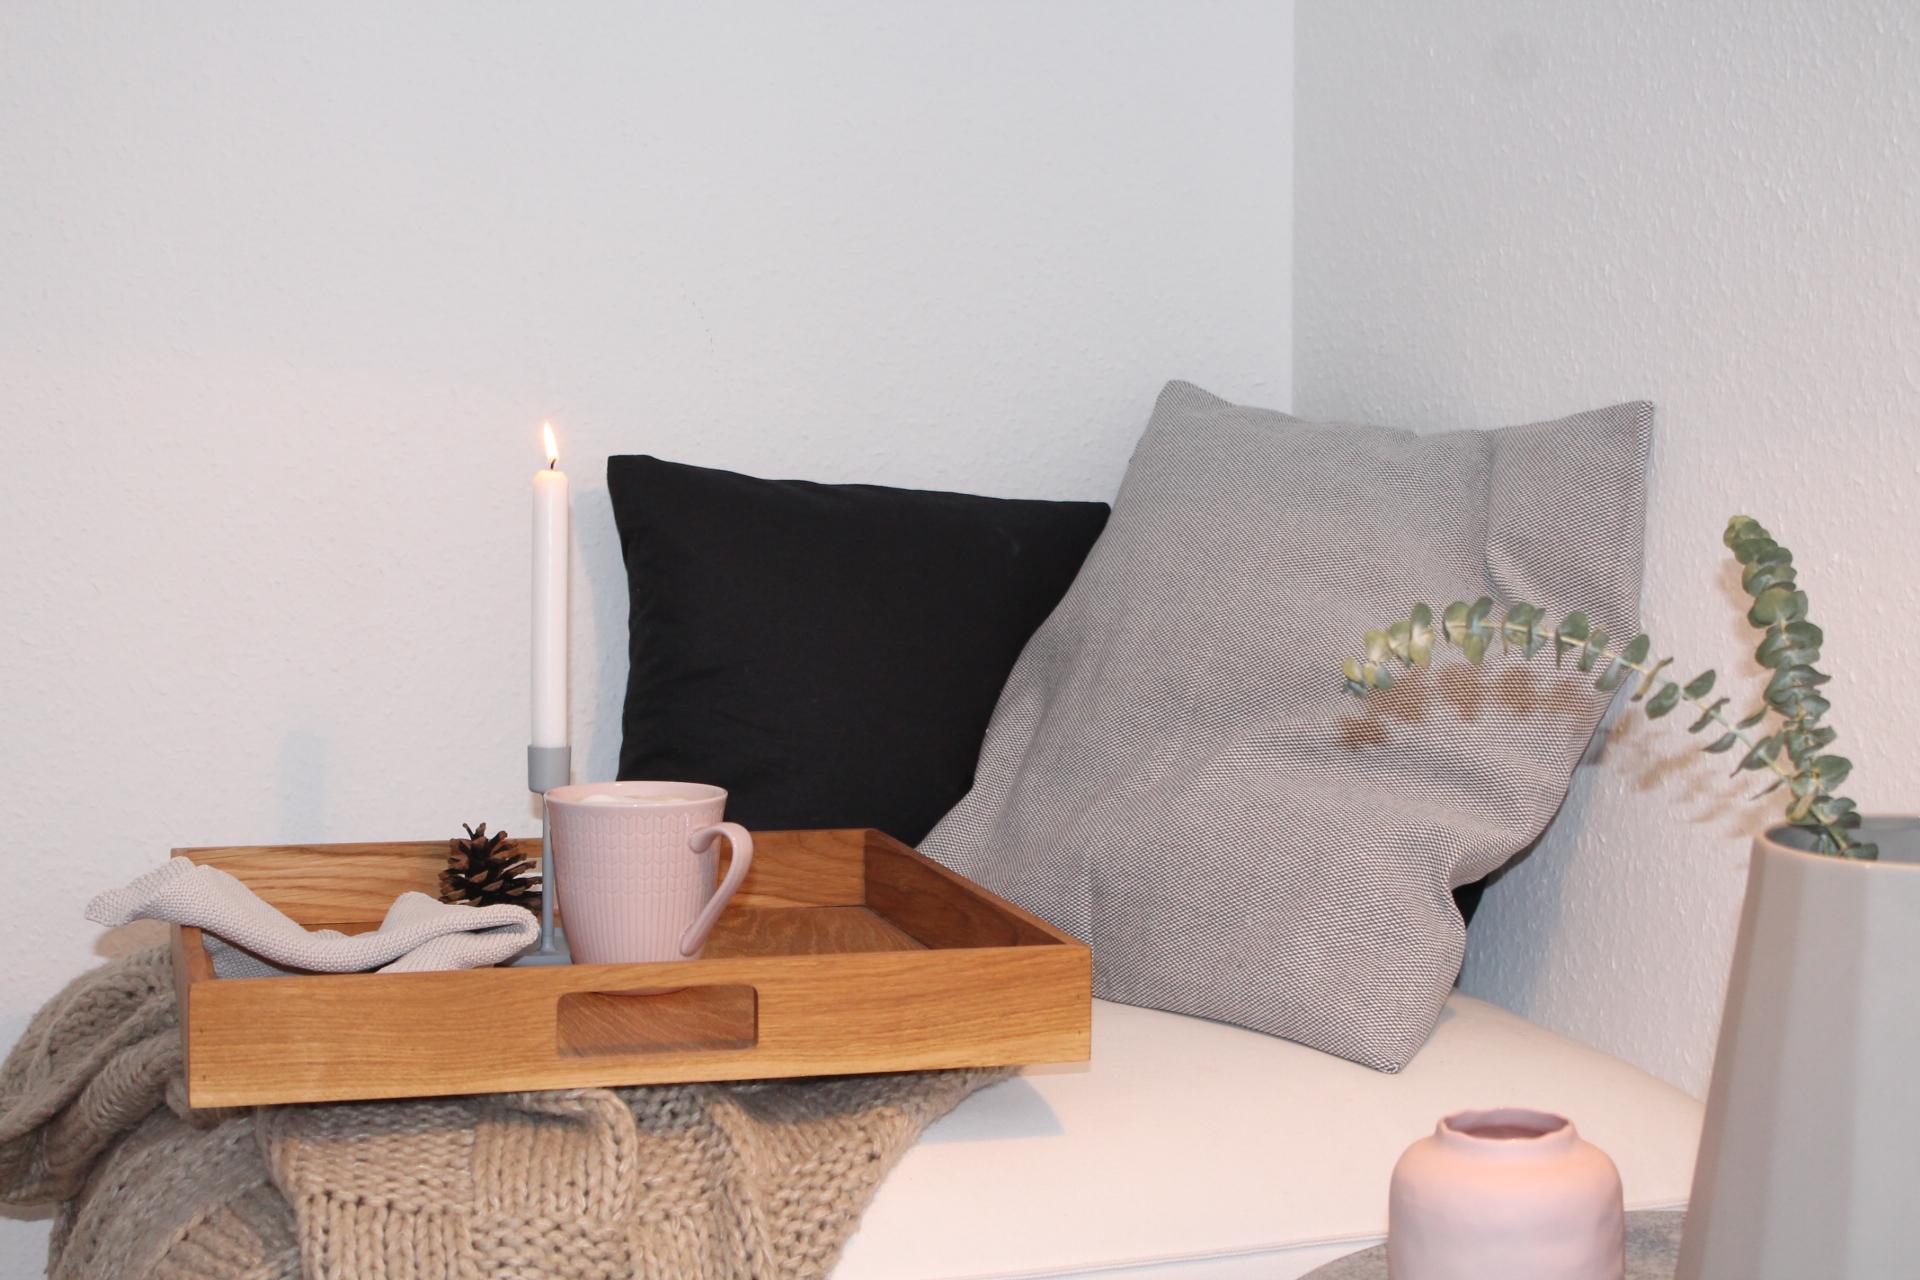 Wohnzimmerecke am Wochenende #wohnzimmer #vase #kissen #tablett #kerzenständer #geschirr ©www.koenigskram.de